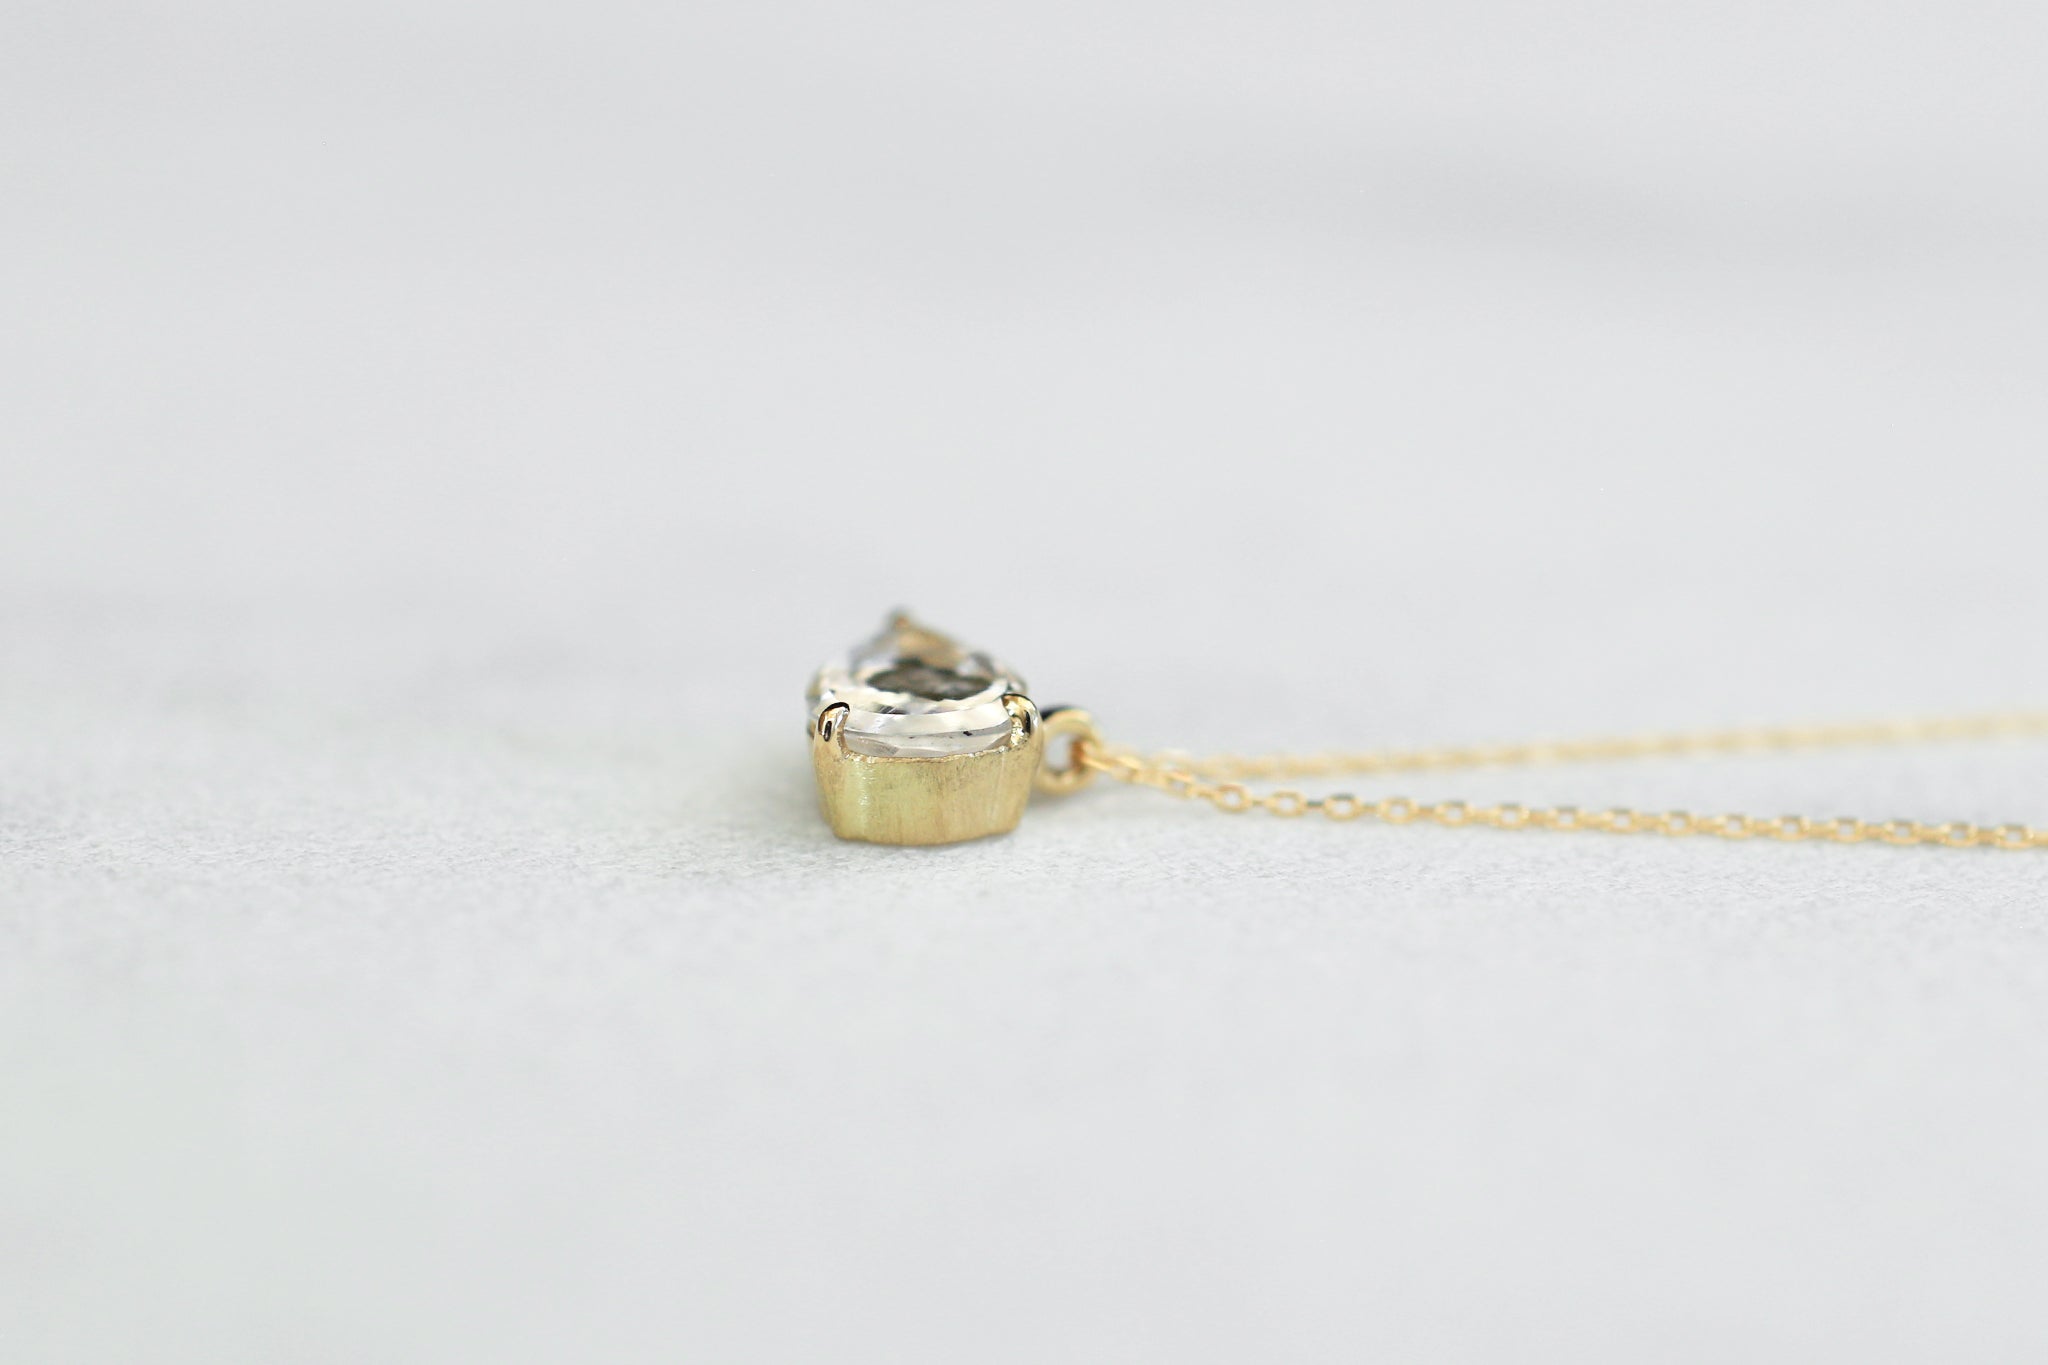 Marcasite in quartz necklace – Ryui